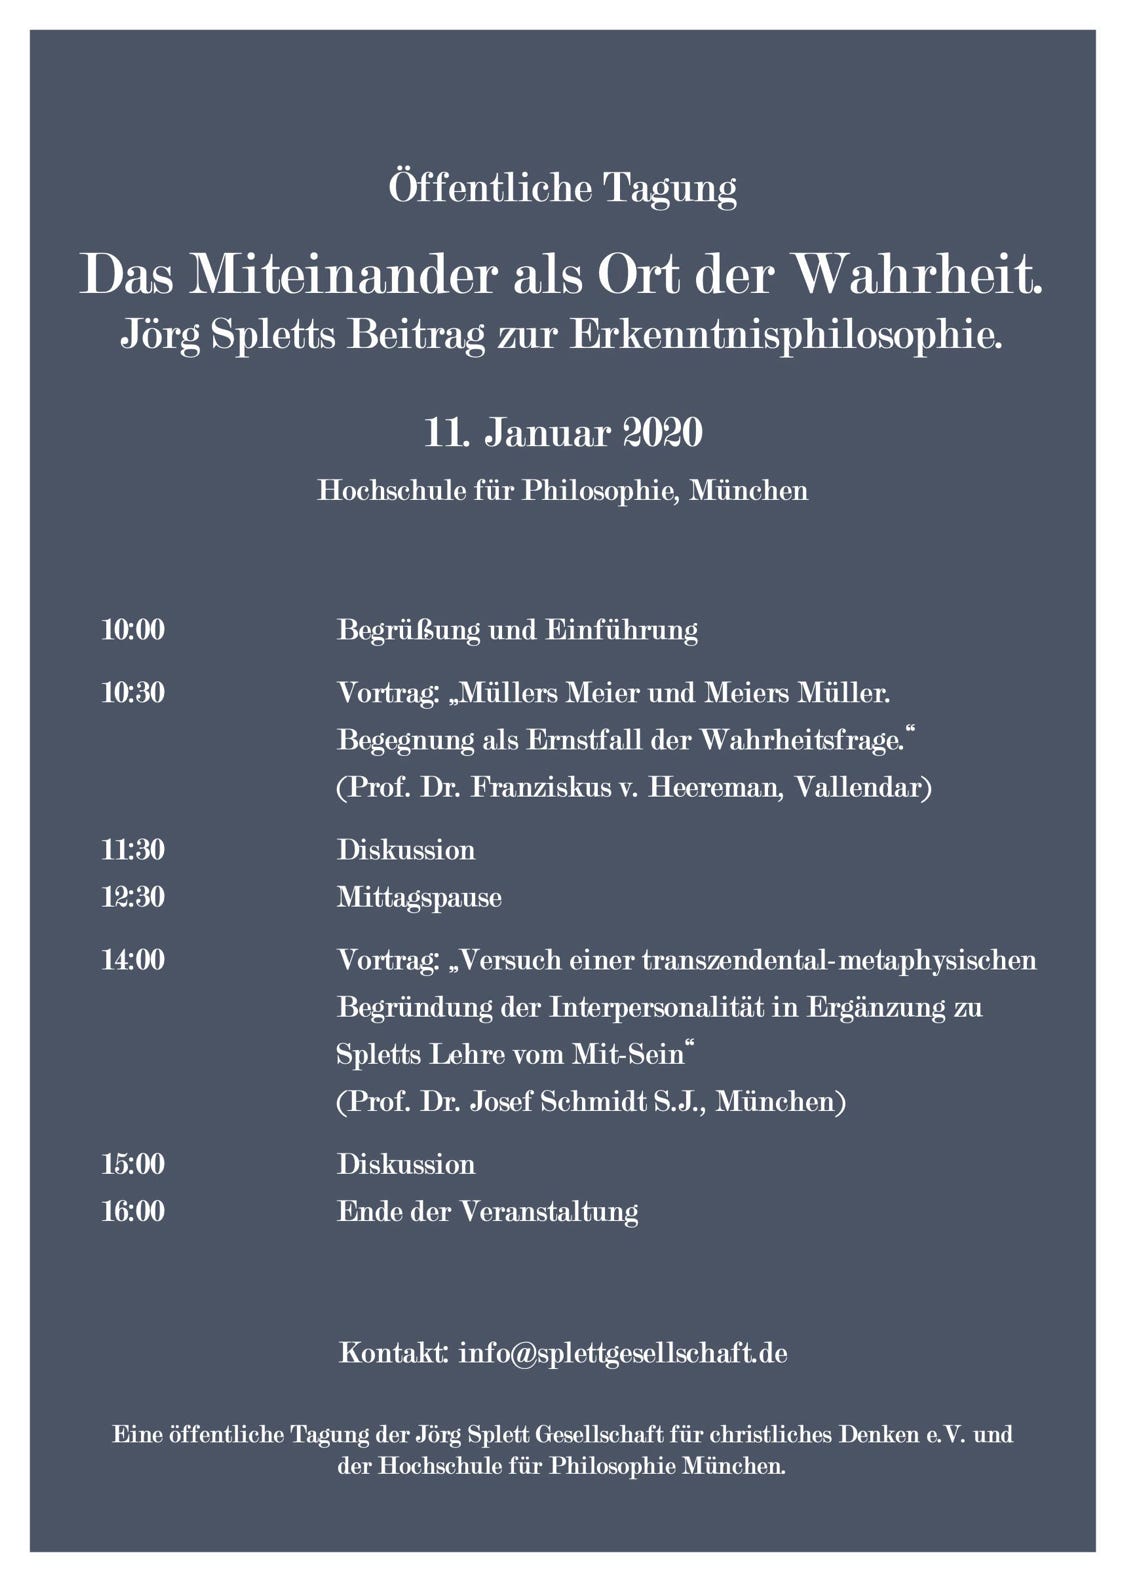 Veranstaltung zu Jörg Spletts Erkenntnisphilosophie